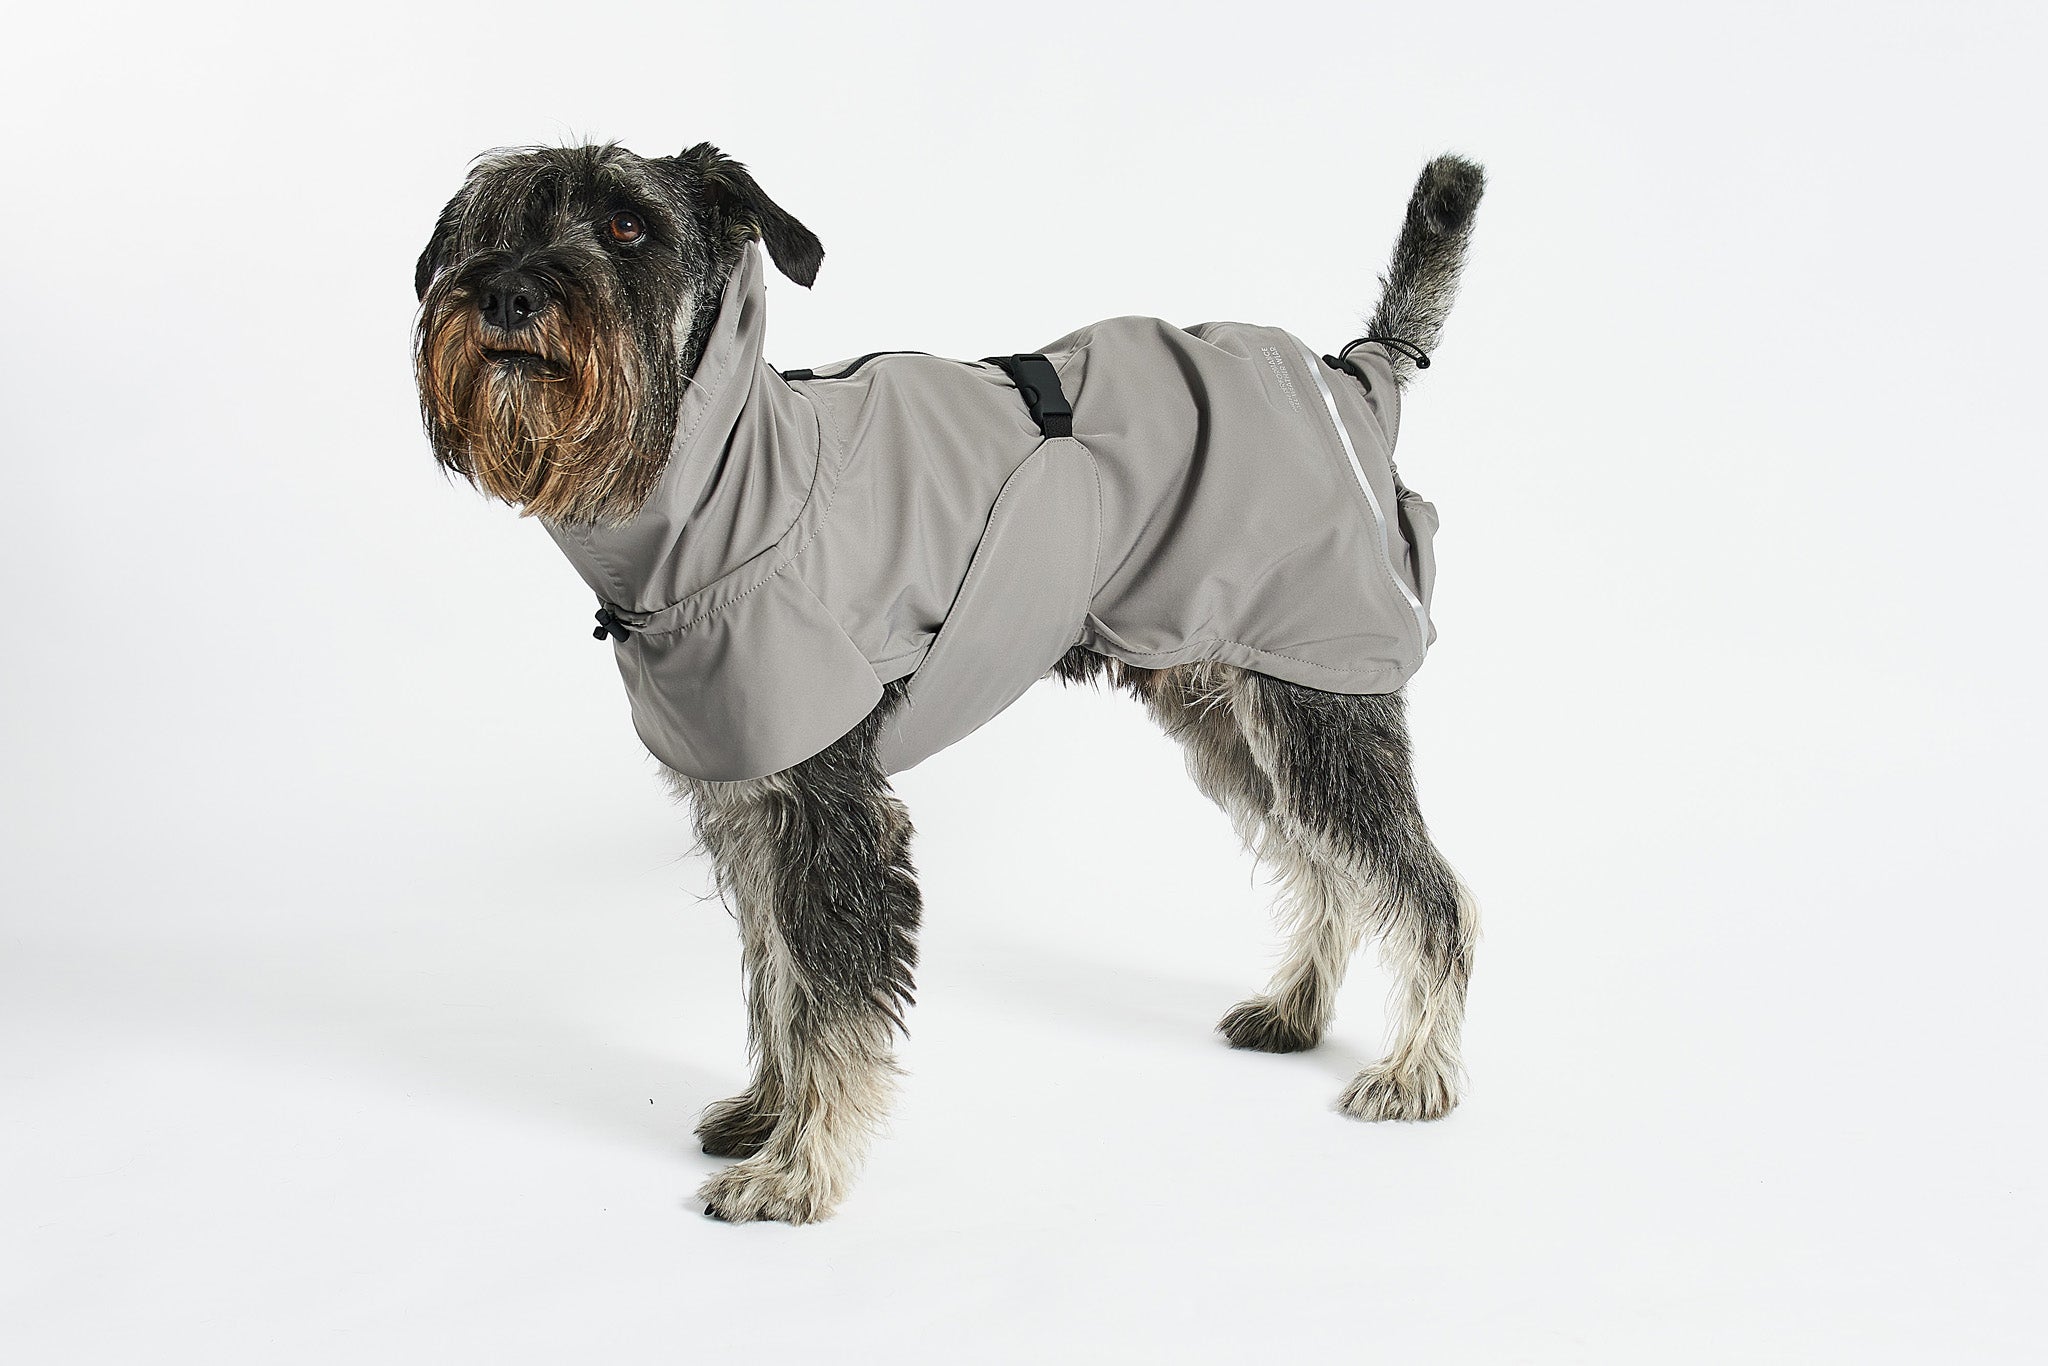 Comfortable dog rain coat for wet weather adventures